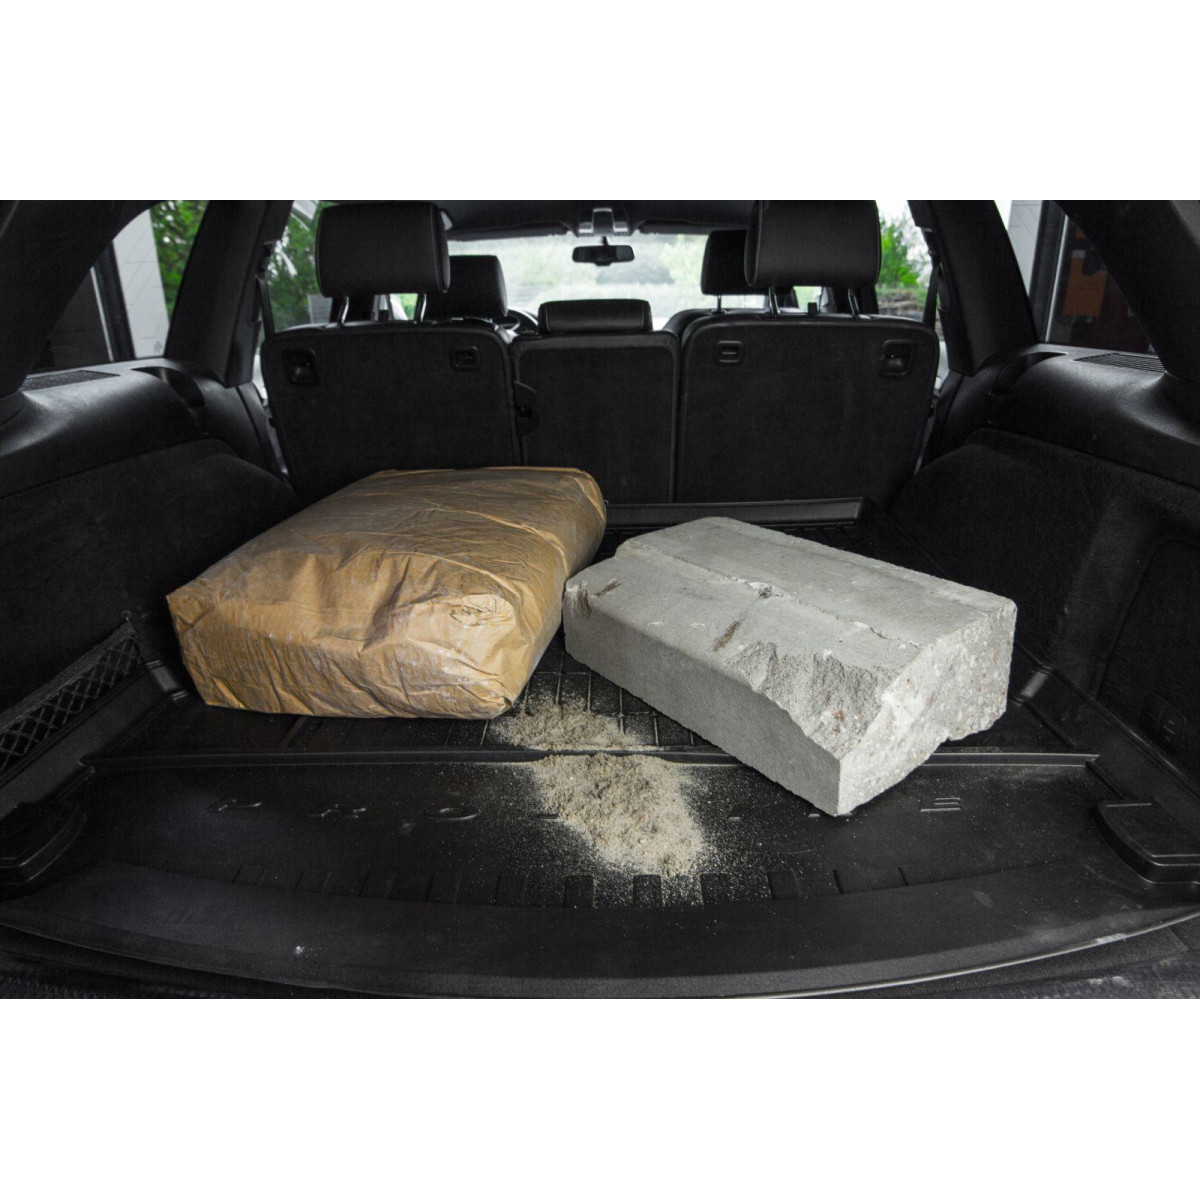 Guminis bagažinės kilimėlis Proline Volvo V70 III Wagon 2007-2016m. / paaukštintais kraštais